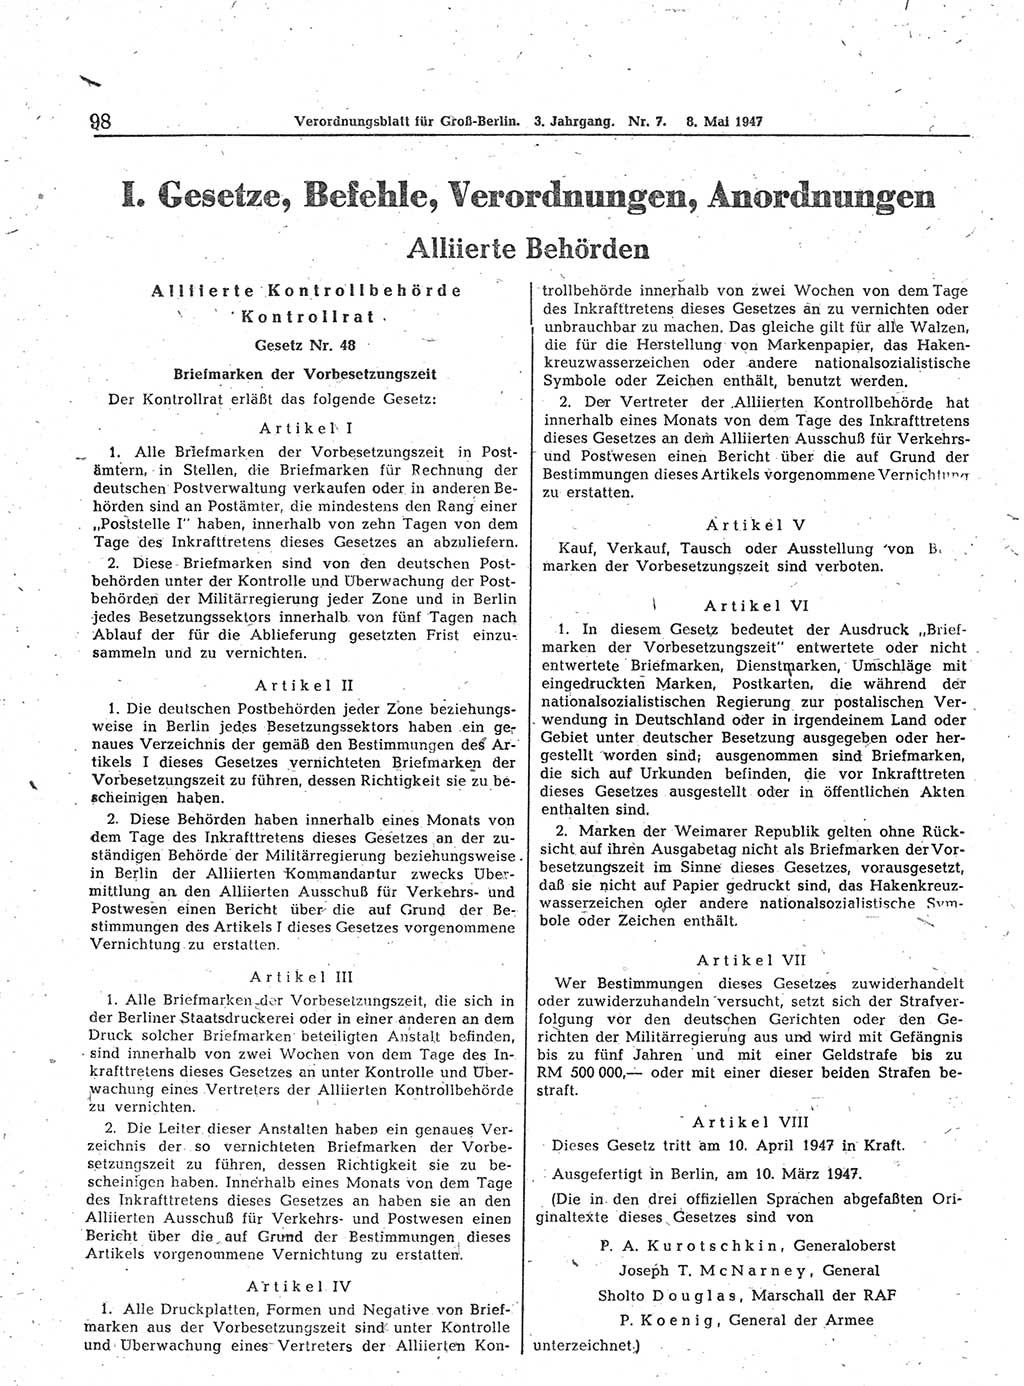 Verordnungsblatt (VOBl.) für Groß-Berlin 1947, Seite 98 (VOBl. Bln. 1947, S. 98)